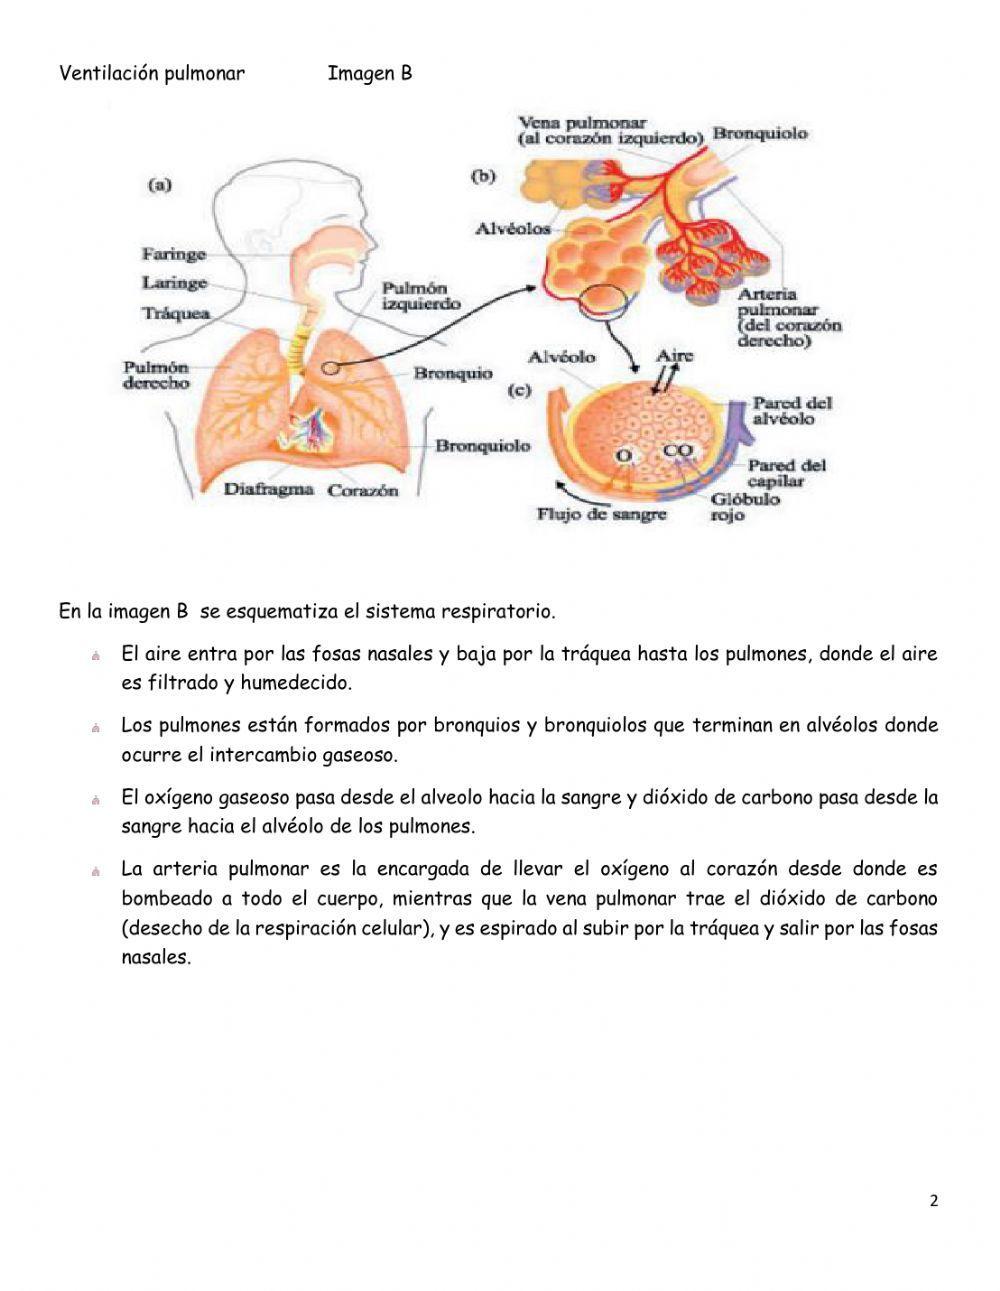 Ventilacion pulmonar